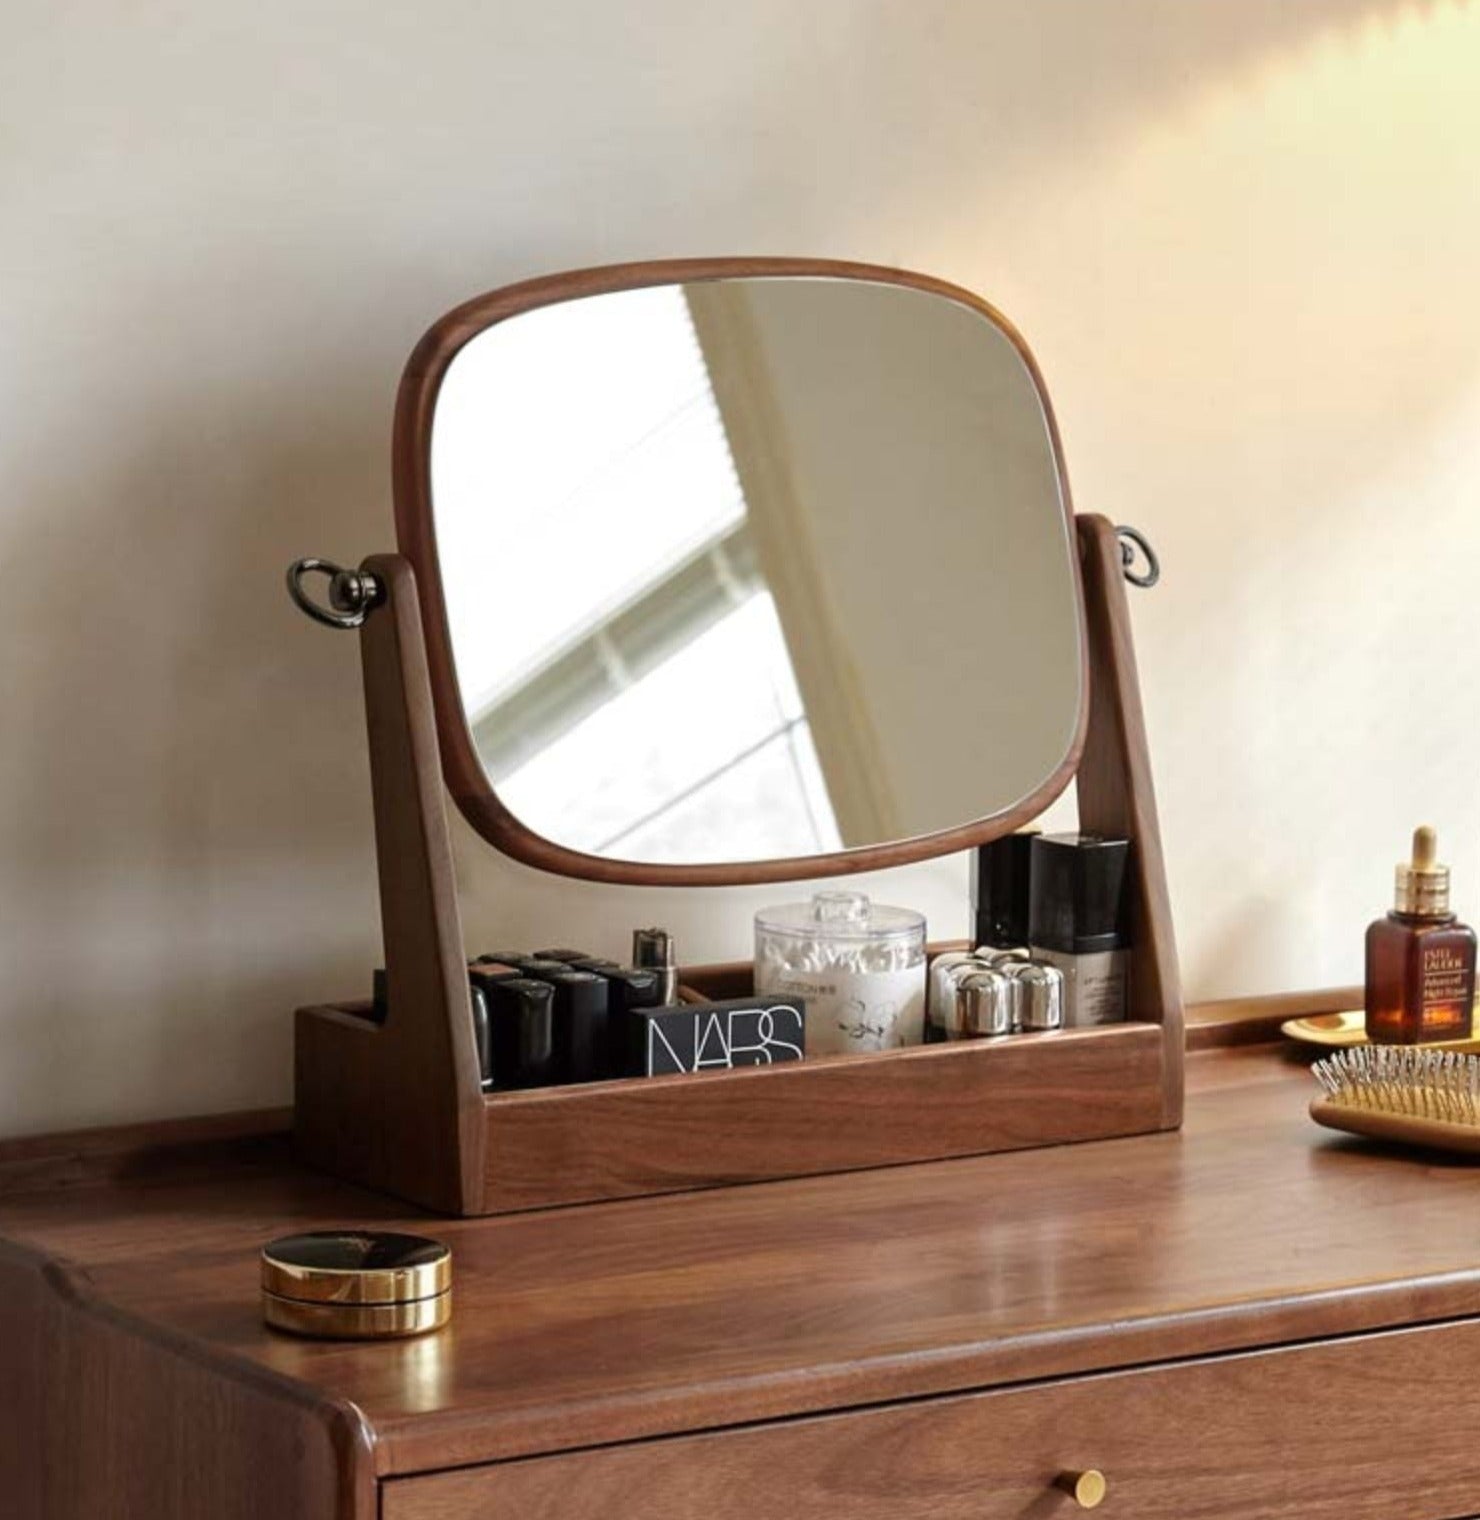 Black walnut solid wood makeup mirror storage box degree rotation*